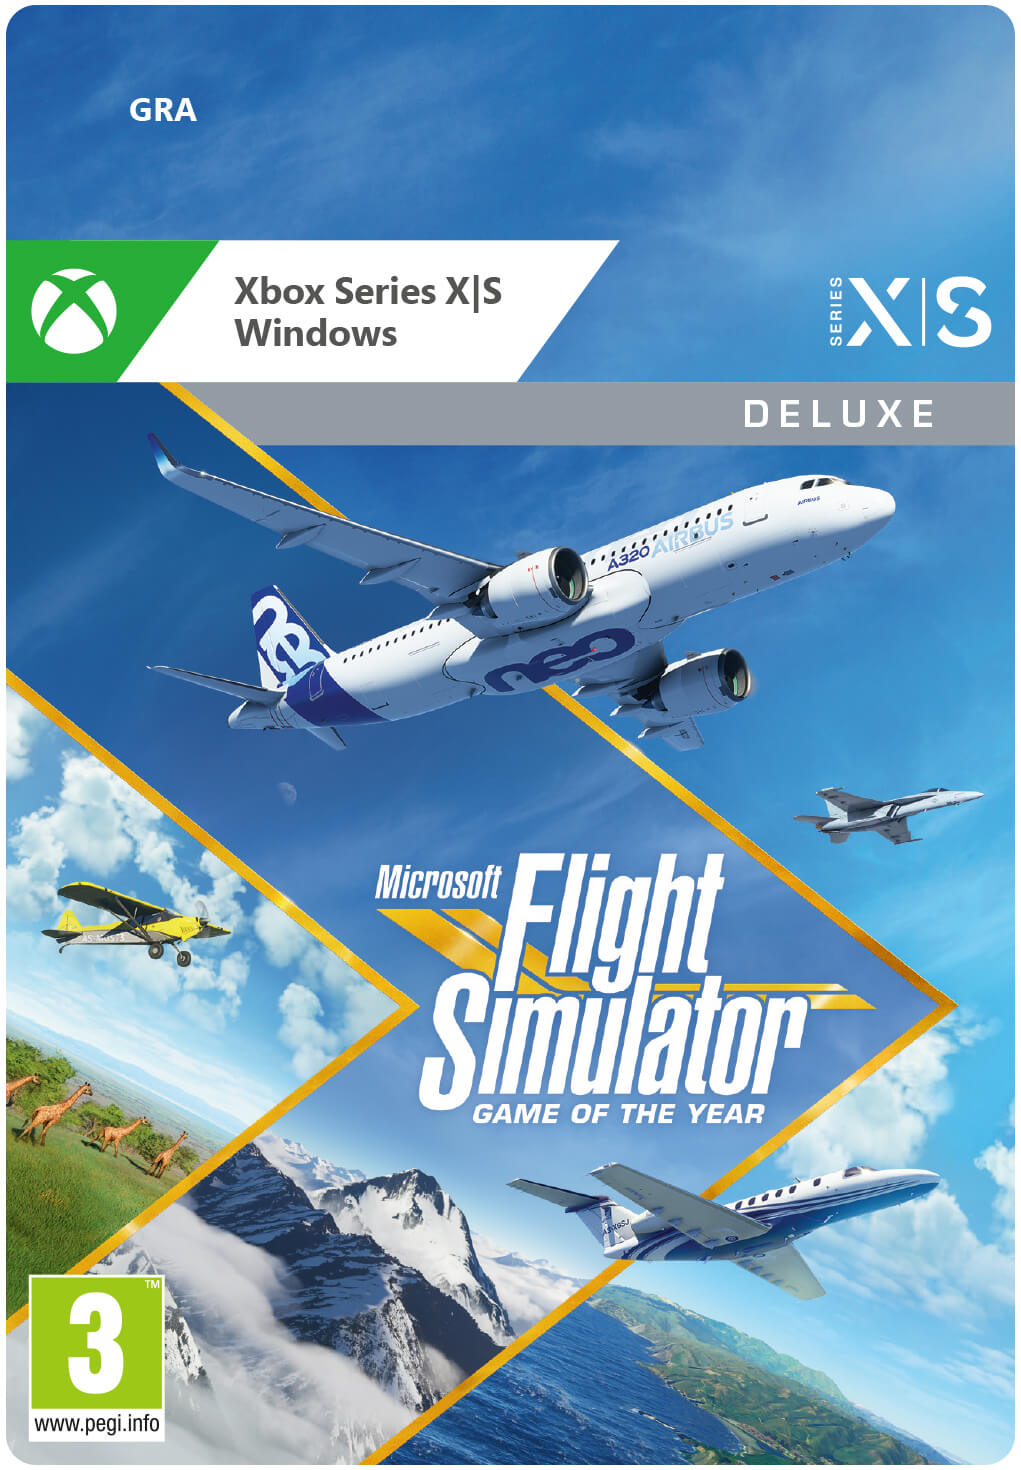 Microsoft Flight Simulator Deluxe Edition Xbox Series X|S / PC